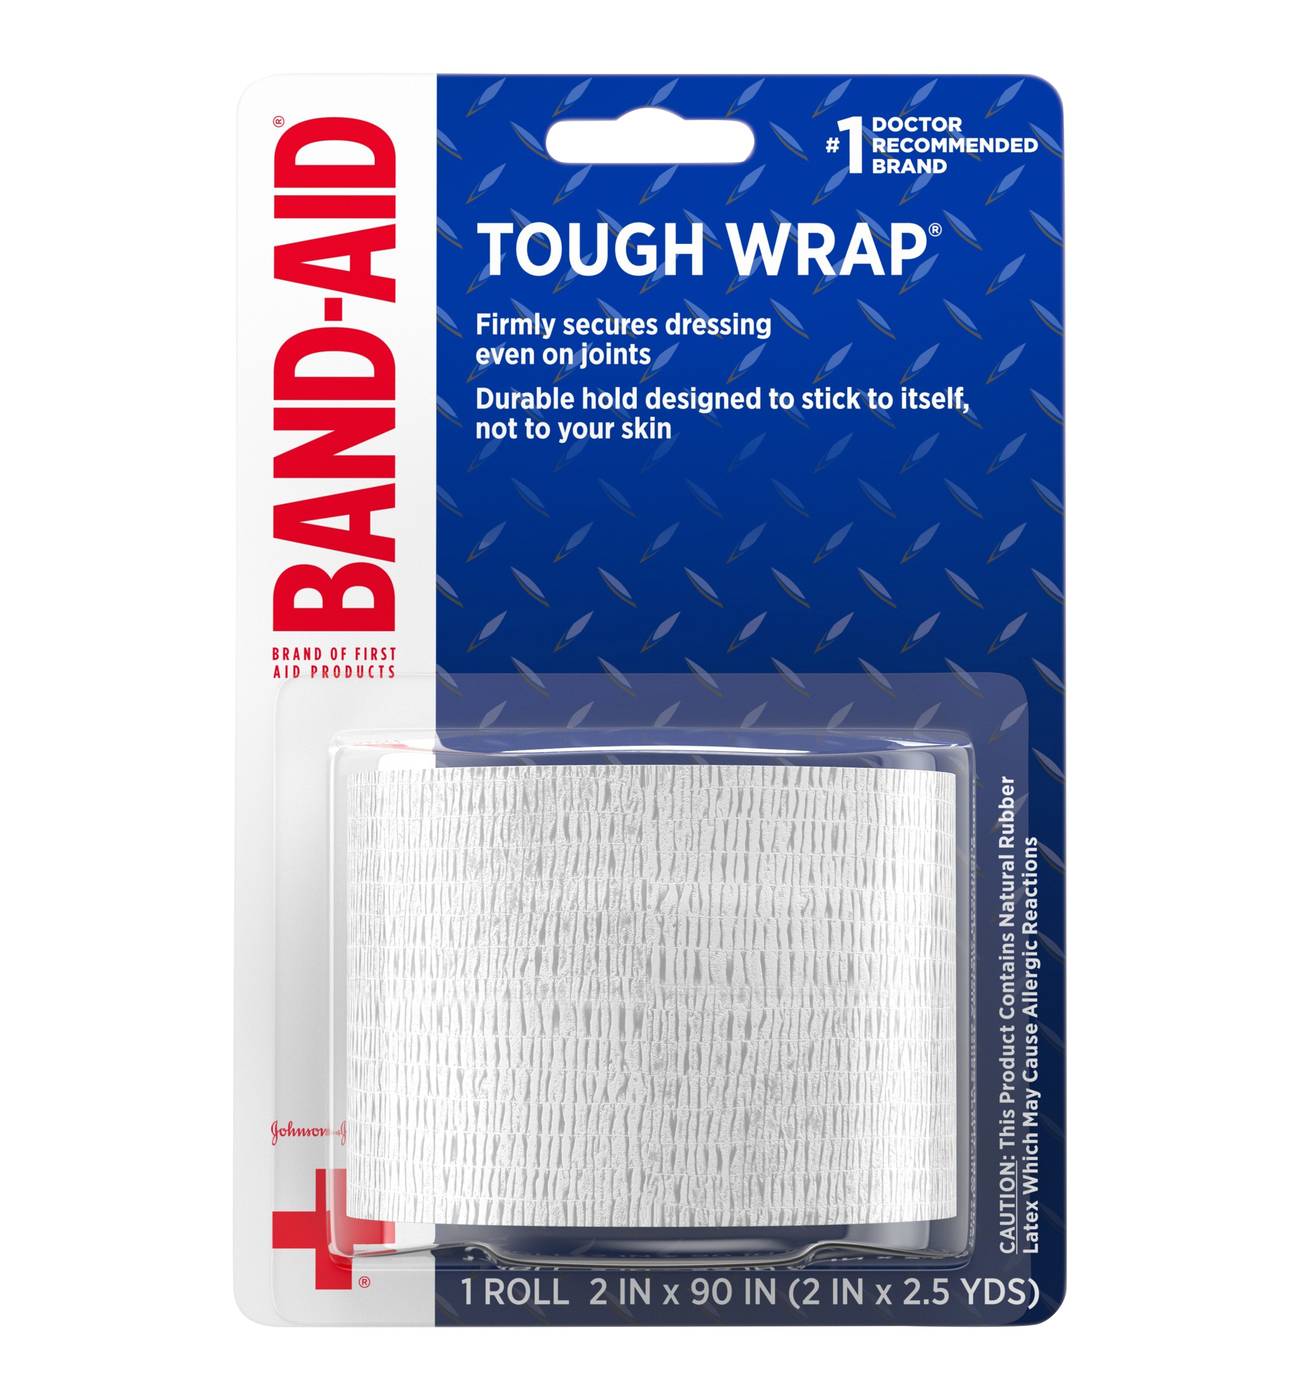 Band-Aid Johnson & Johnson Travel Ready First Aid Kit - Shop Kits & Supplies  at H-E-B